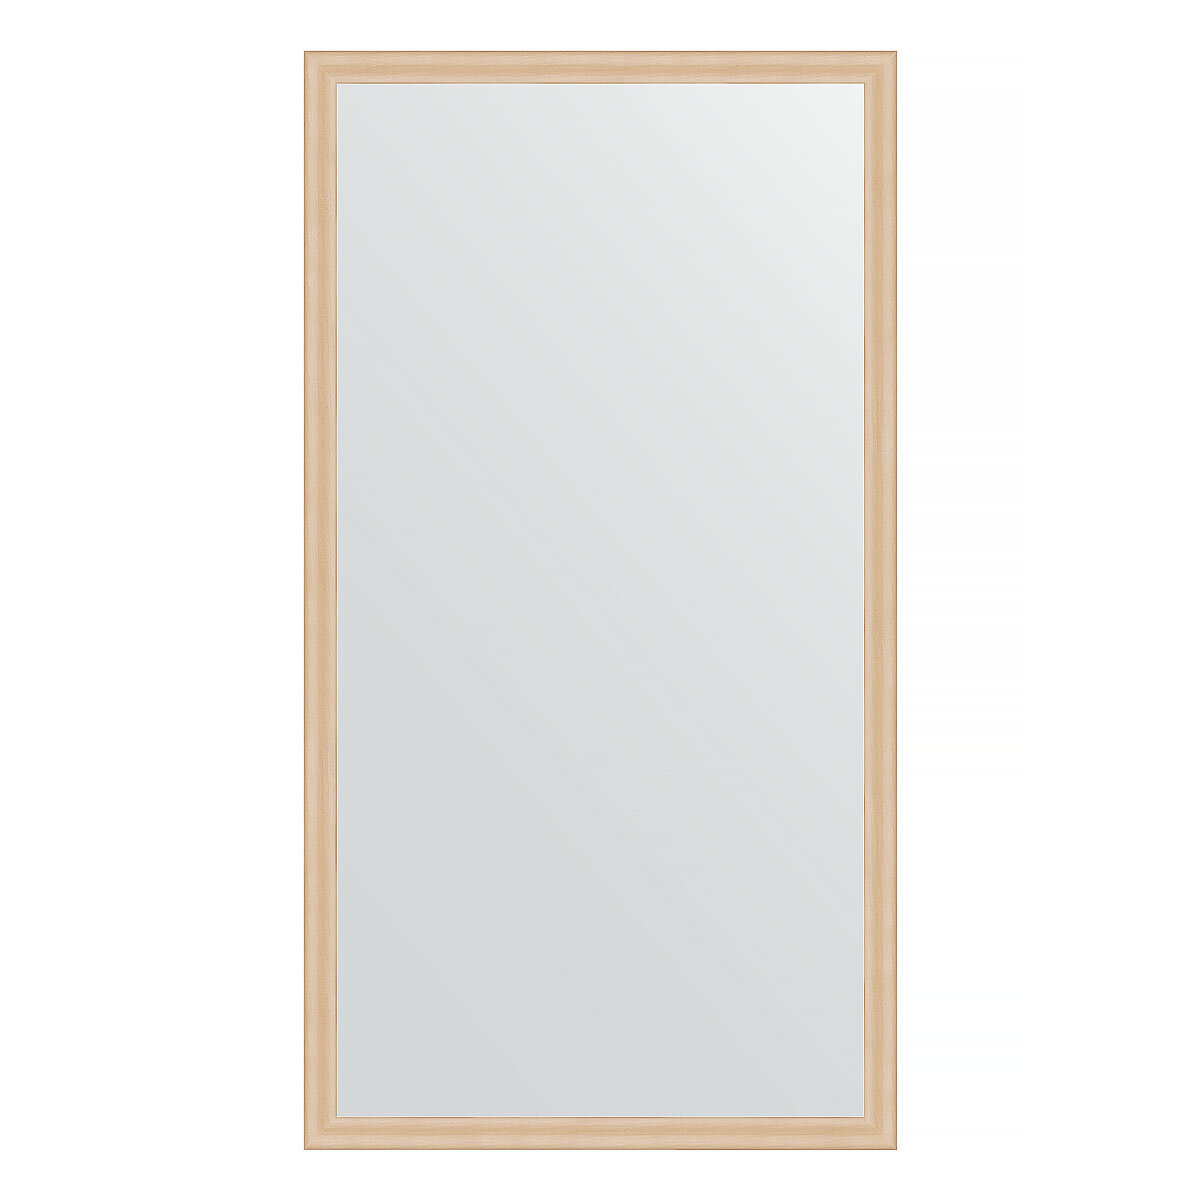 Зеркало настенное EVOFORM в багетной раме бук, 70х130 см, для гостиной, прихожей, кабинета, спальни и ванной комнаты, BY 0748